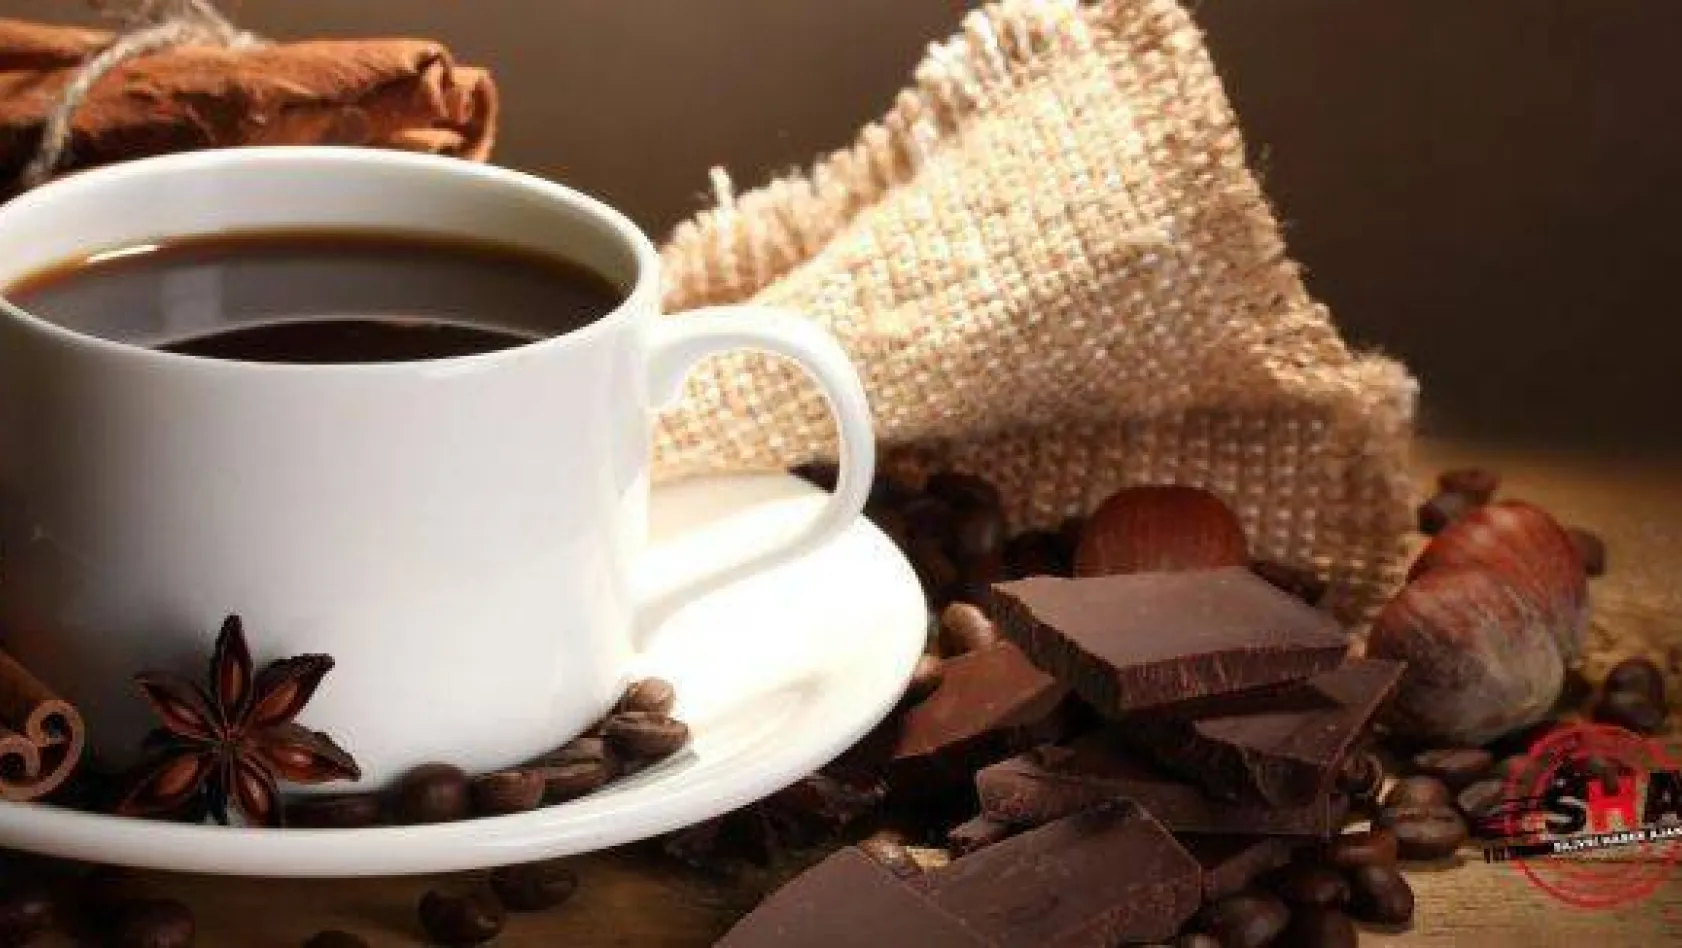 Kahvenin yanında çikolata yemek faydalı mı?